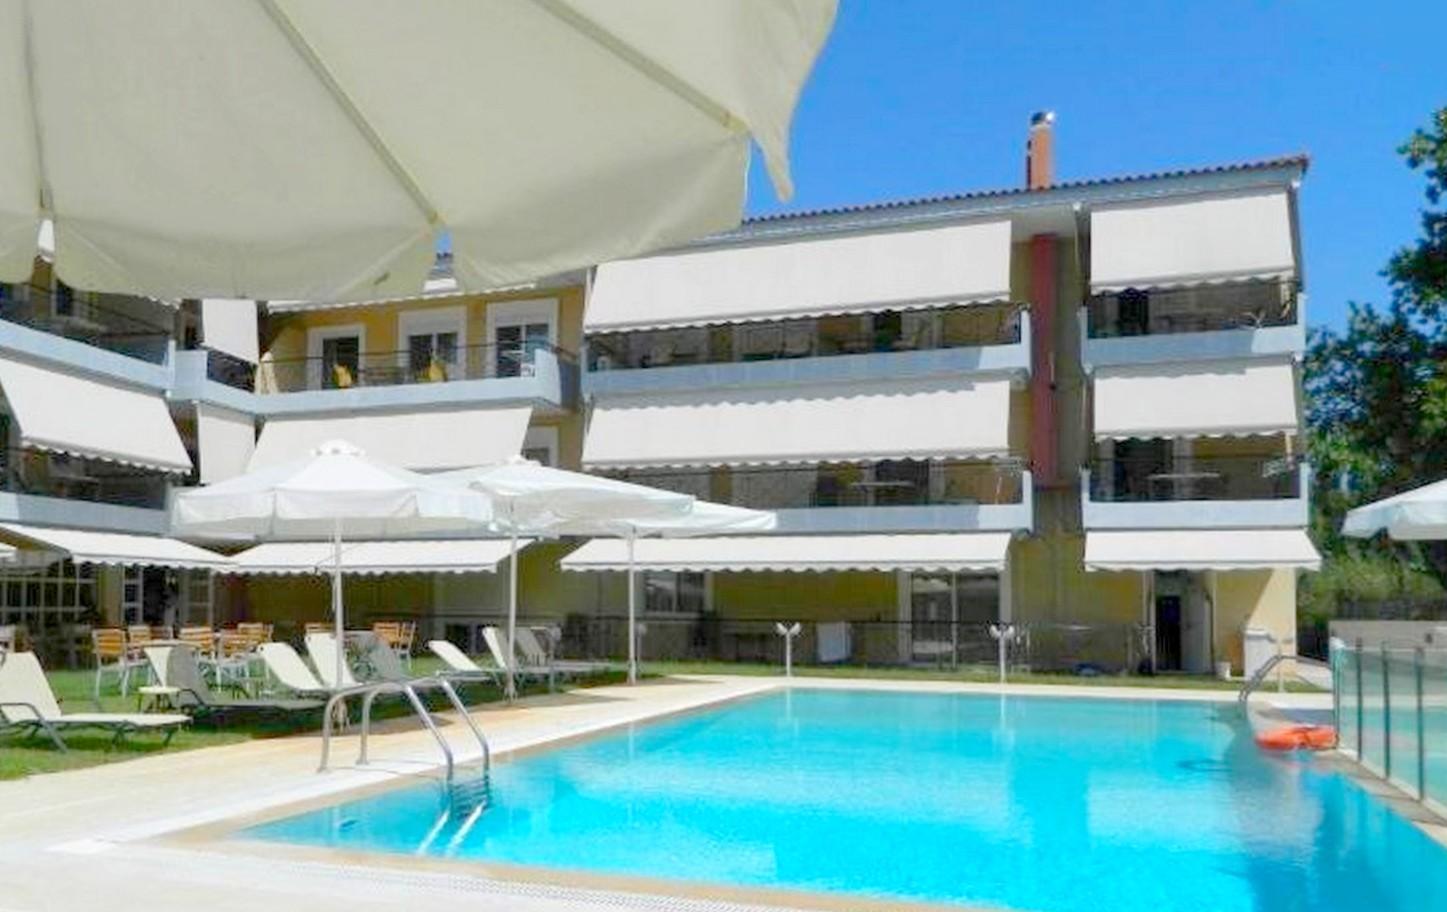 Ile d'Eubée - Complexe immobilier (appart'hôtel) avec piscine à 250 m de la plage